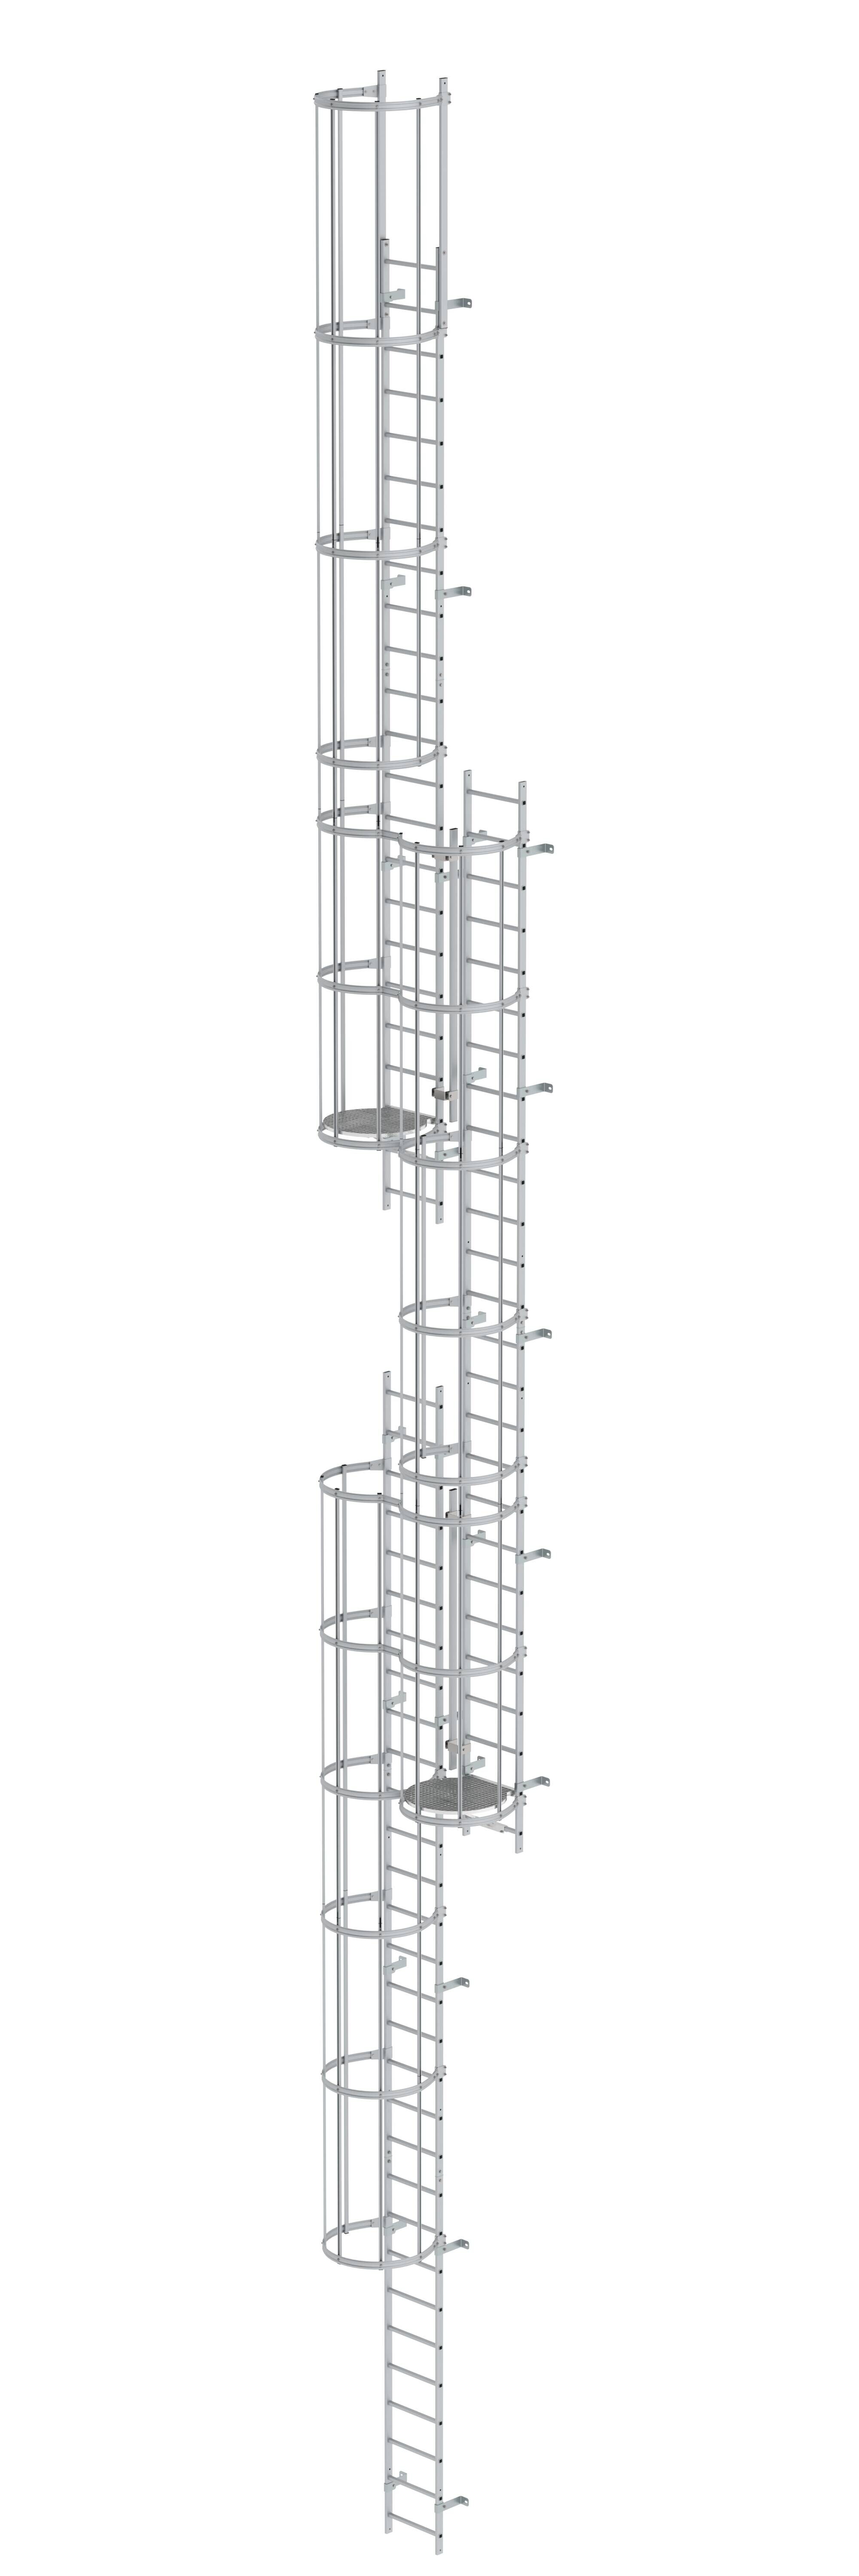 Mehrzügige Steigleiter mit Rückenschutz (Maschinen) Aluminium eloxiert 17,16m